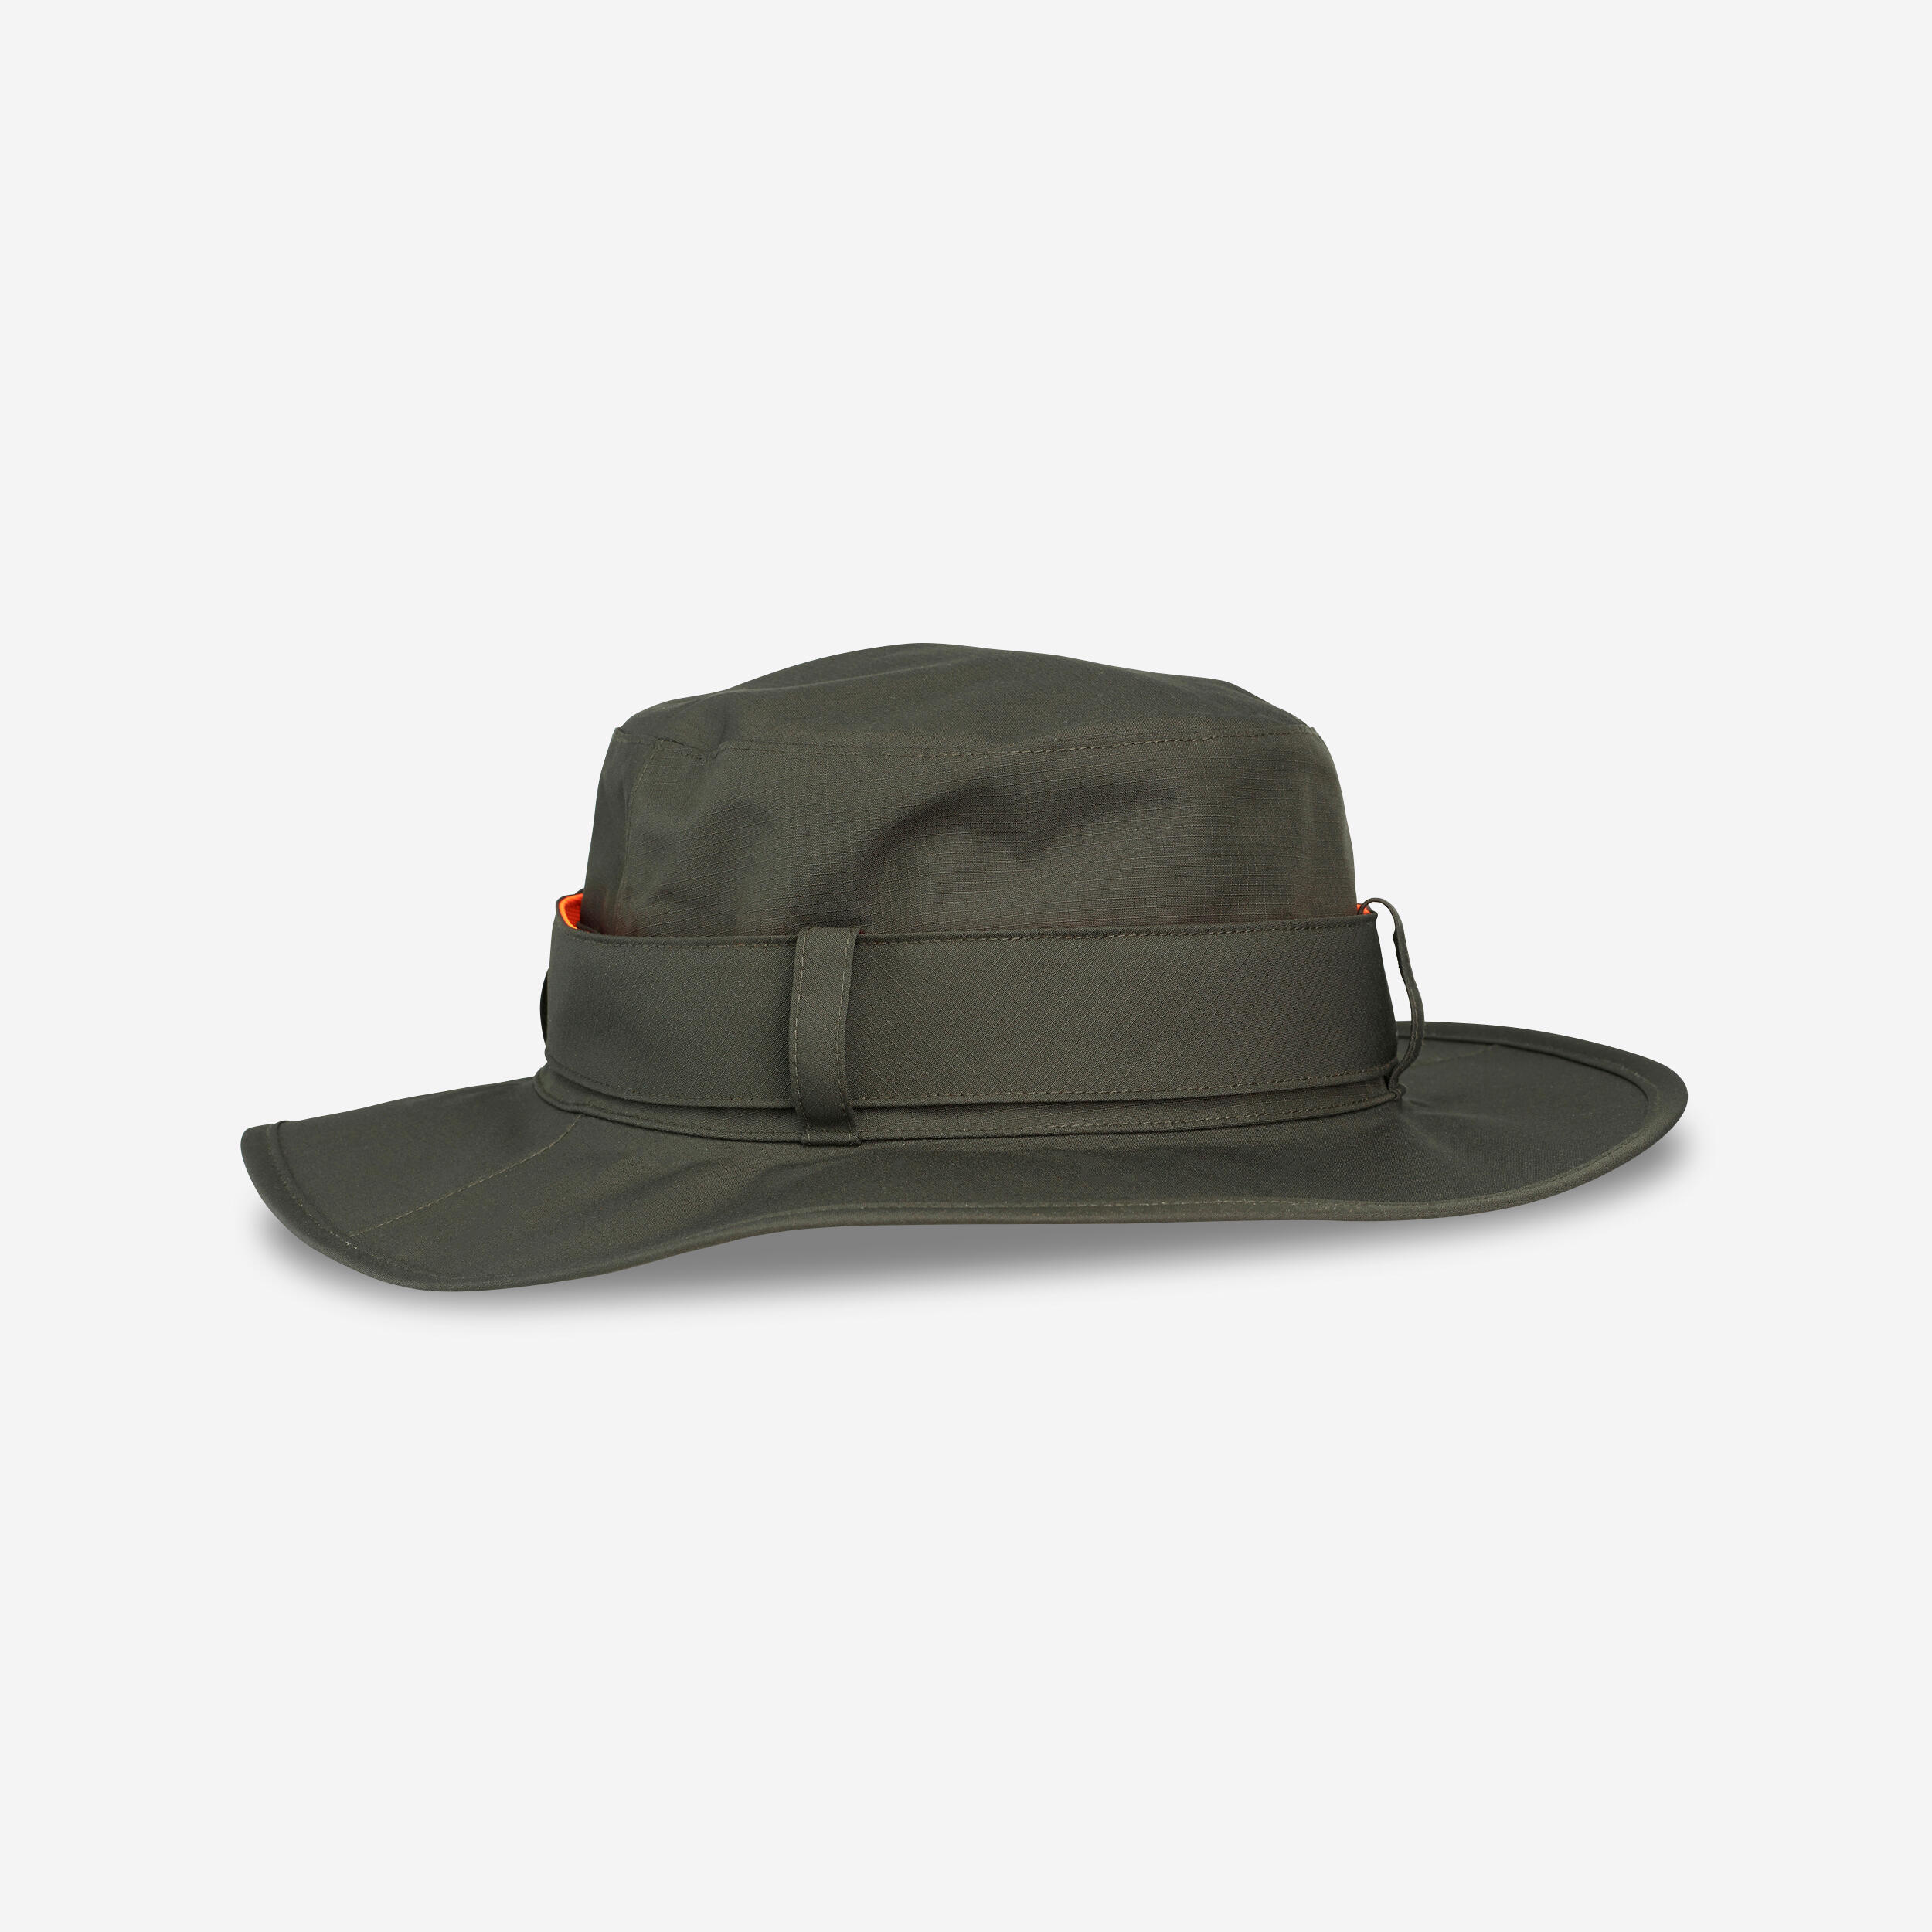 Pălărie SG520 impermeabilă și rezistentă verde bărbați decathlon.ro imagine 2022